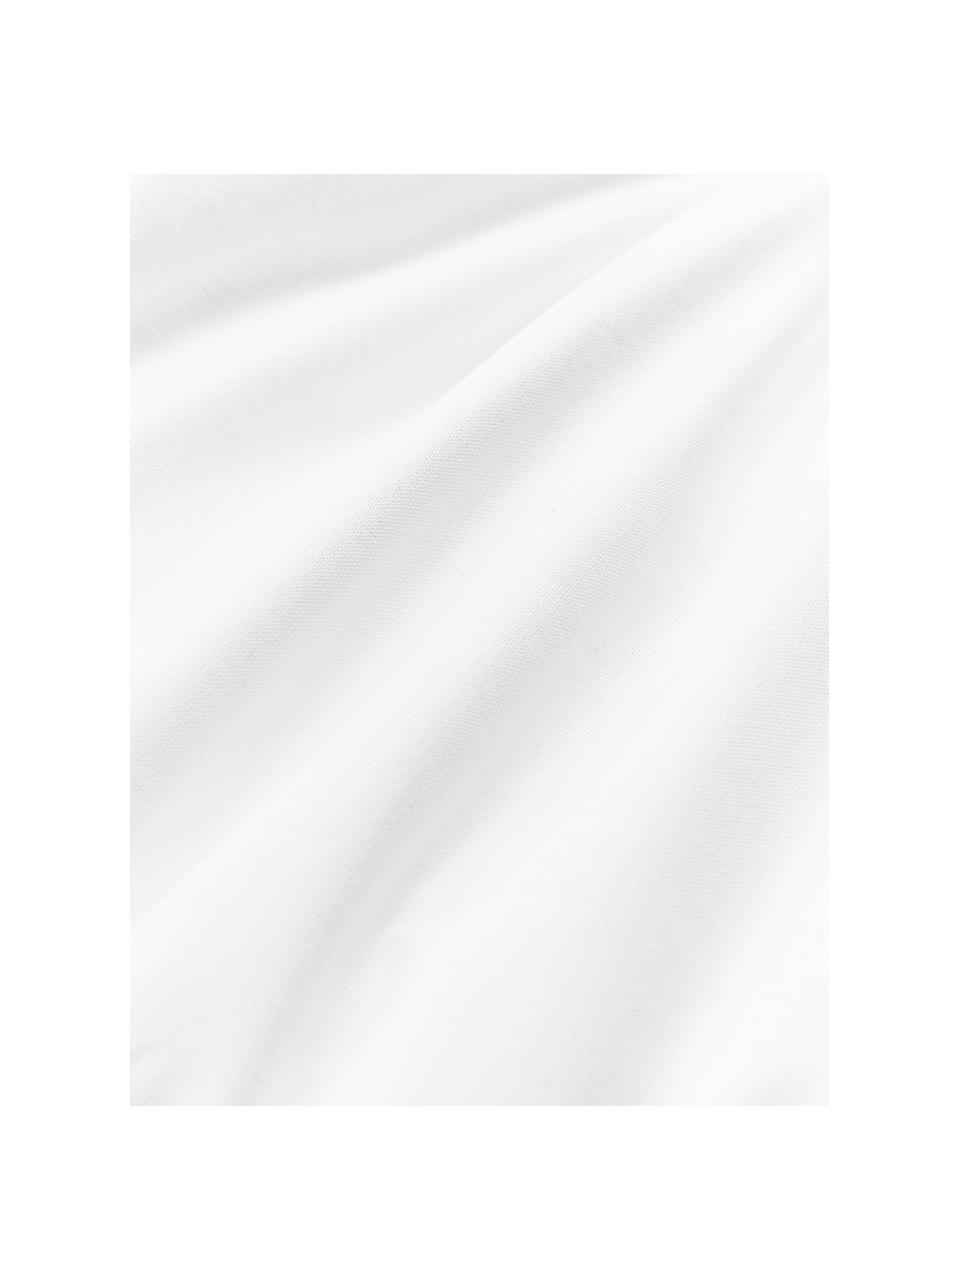 Wkład do poduszki z mikrofibry Sia, różne rozmiary, Biały, S 45 x D 45 cm